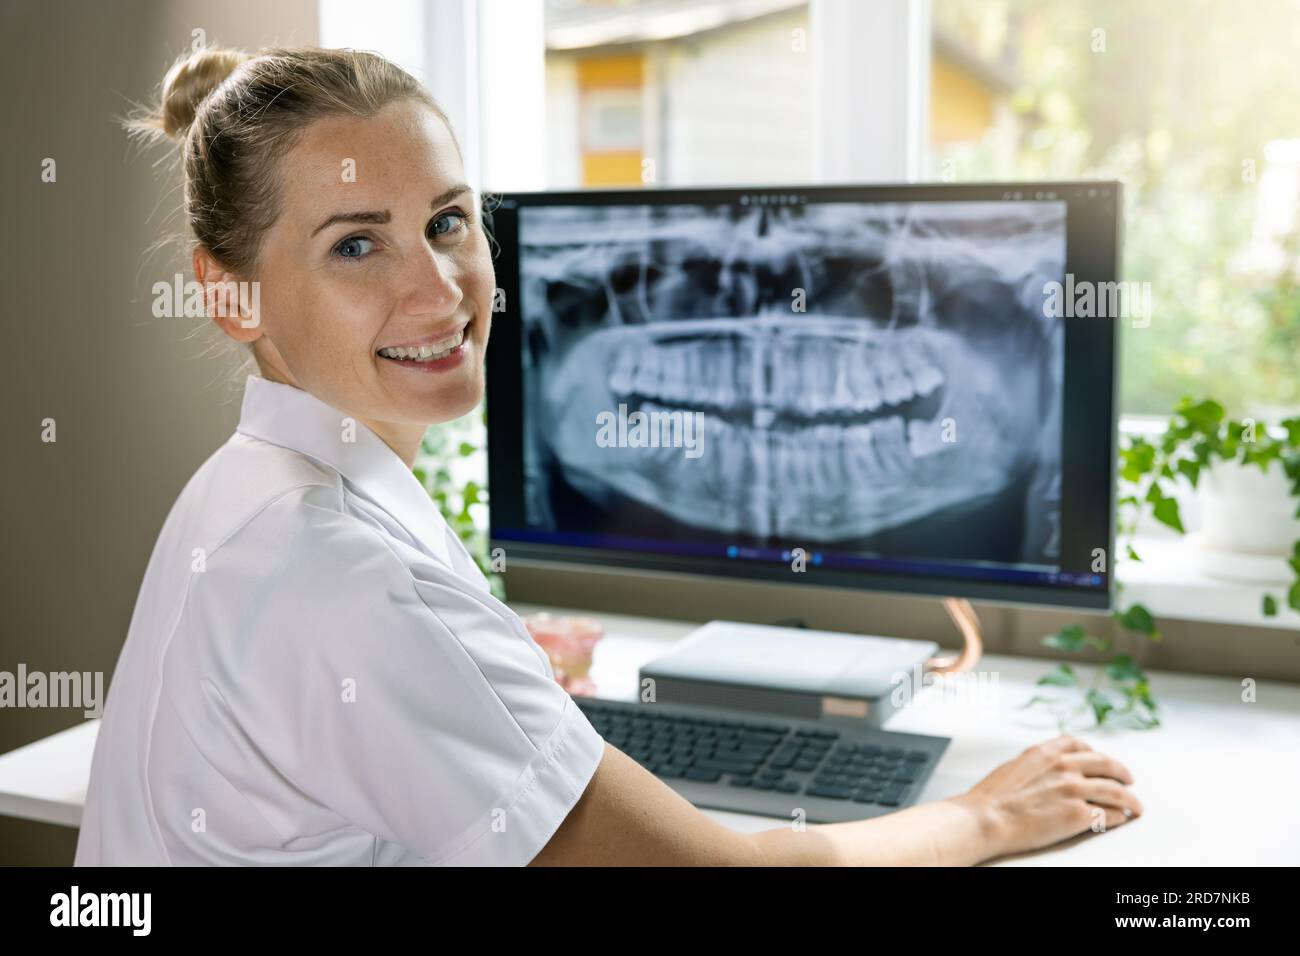 dentista sorridente che lavora con l'immagine a raggi x dentale sul computer negli studi clinici Foto Stock